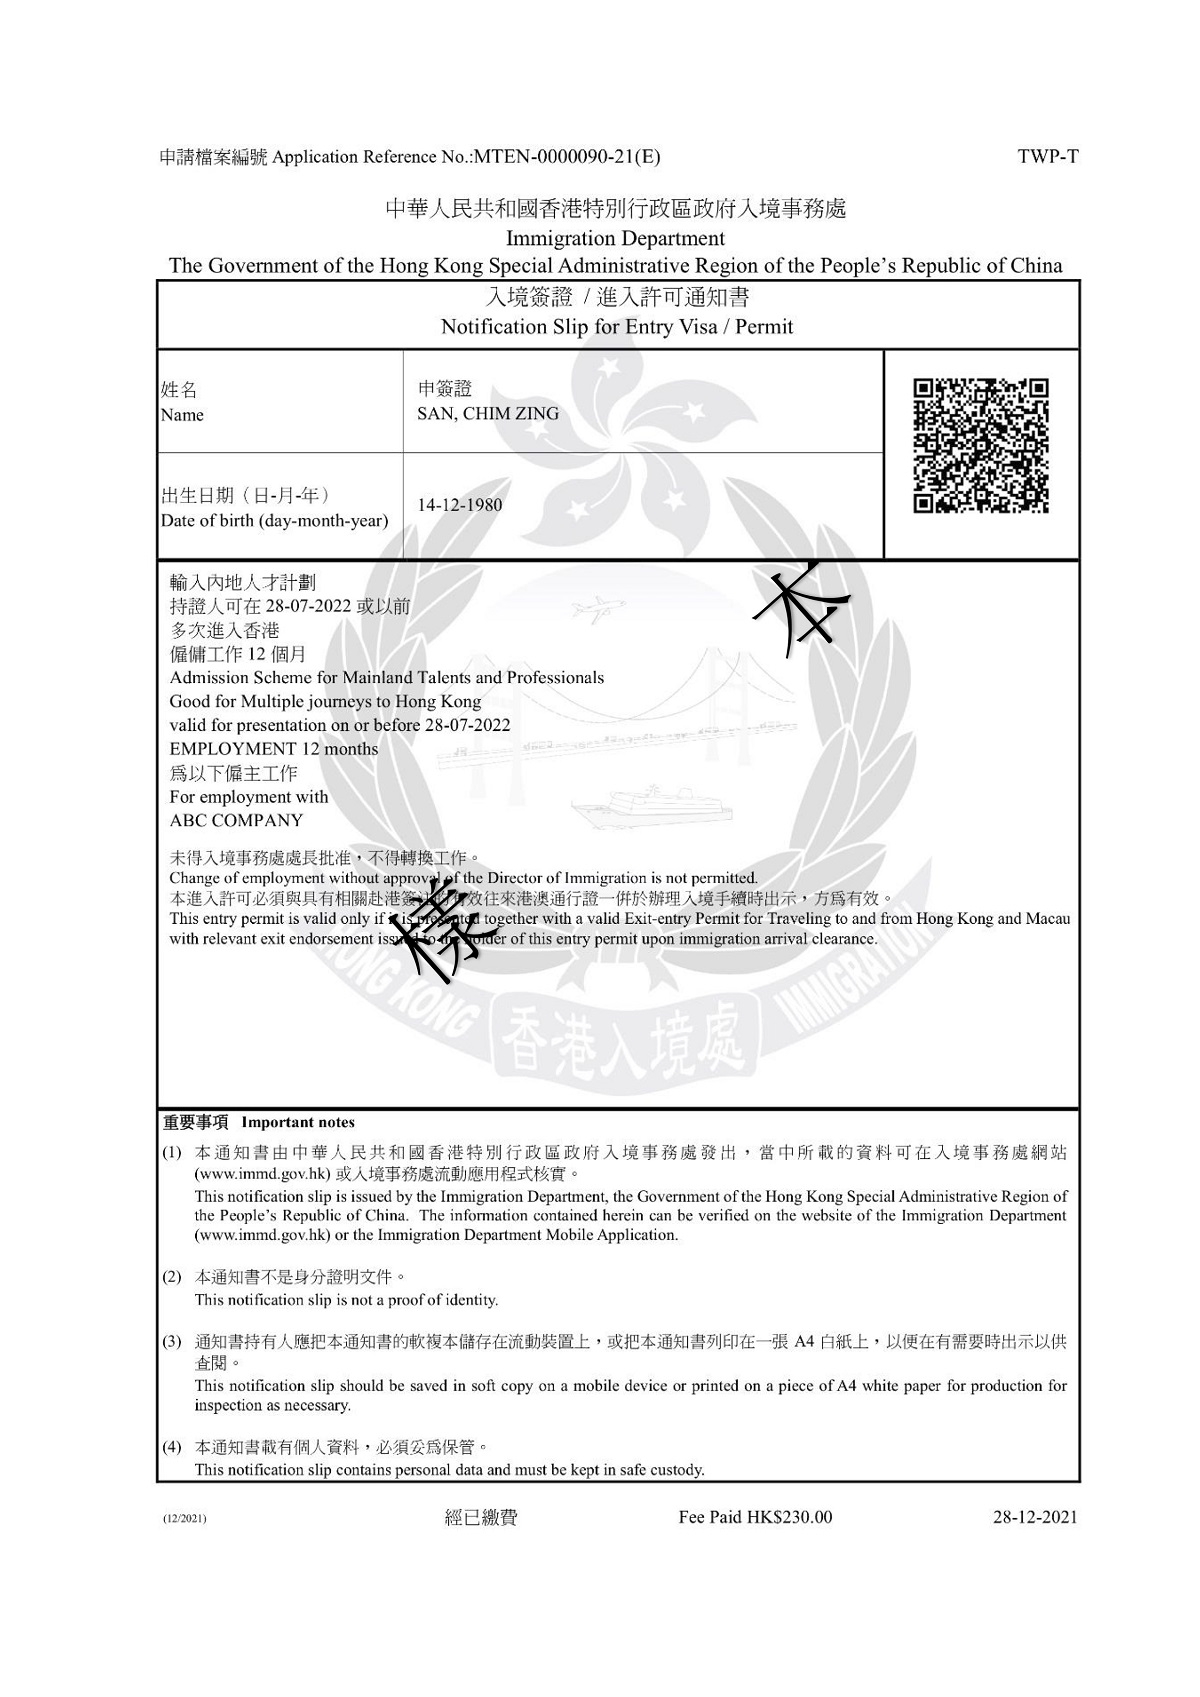 https://www.immd.gov.hk/images/services/e_visa_notification_slip_for_entry_visa_hkt.jpg